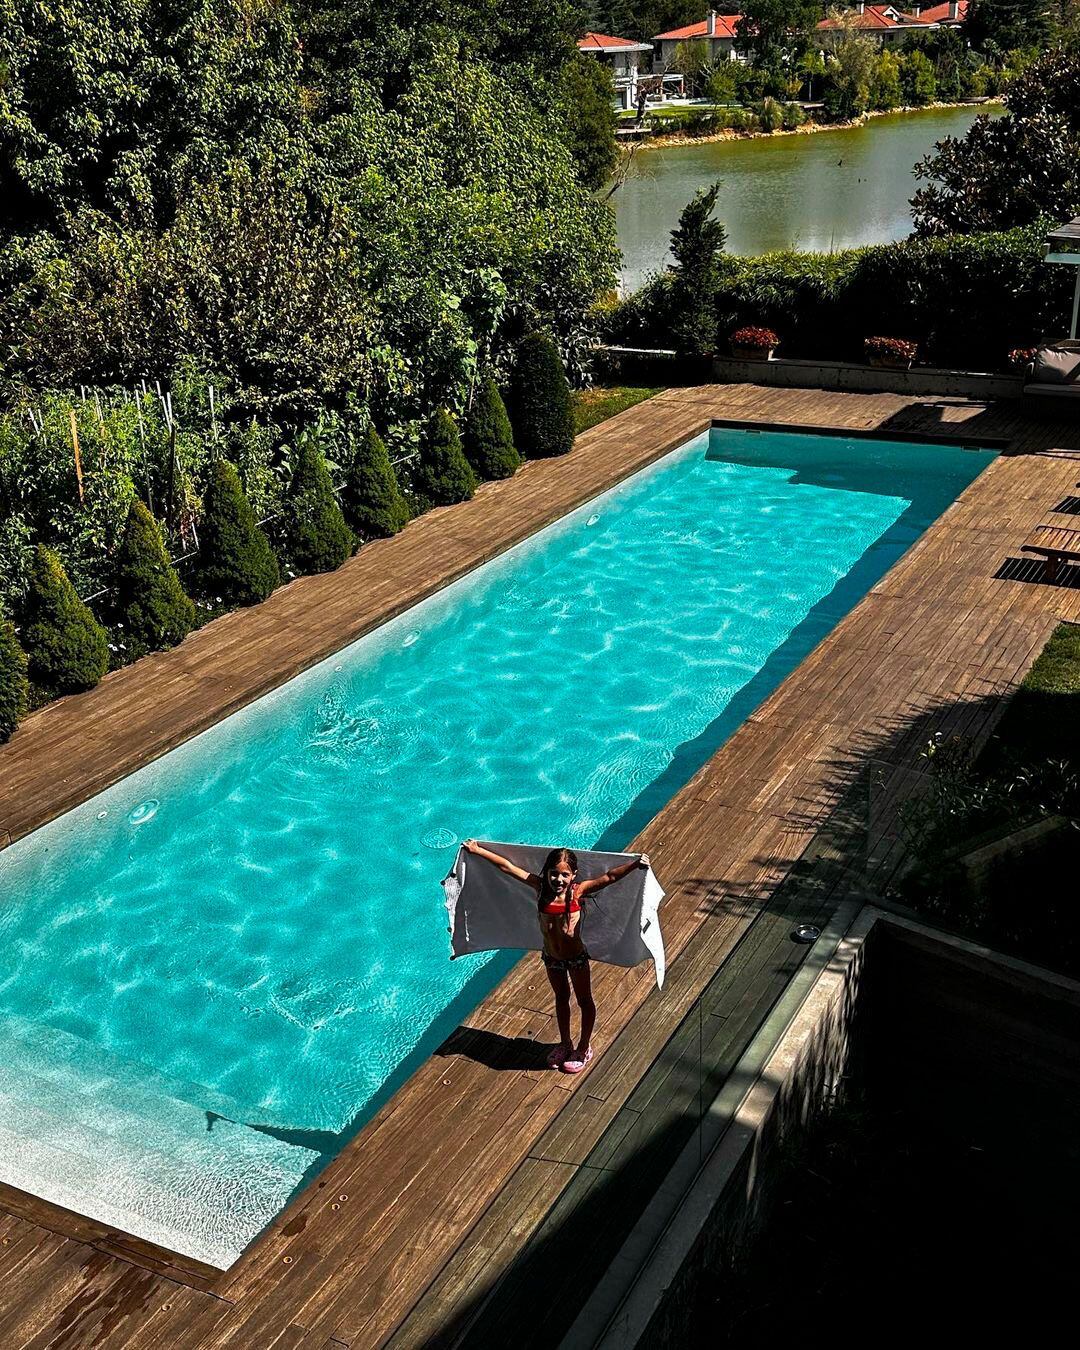 La piscina de su casa desde una toma aérea 